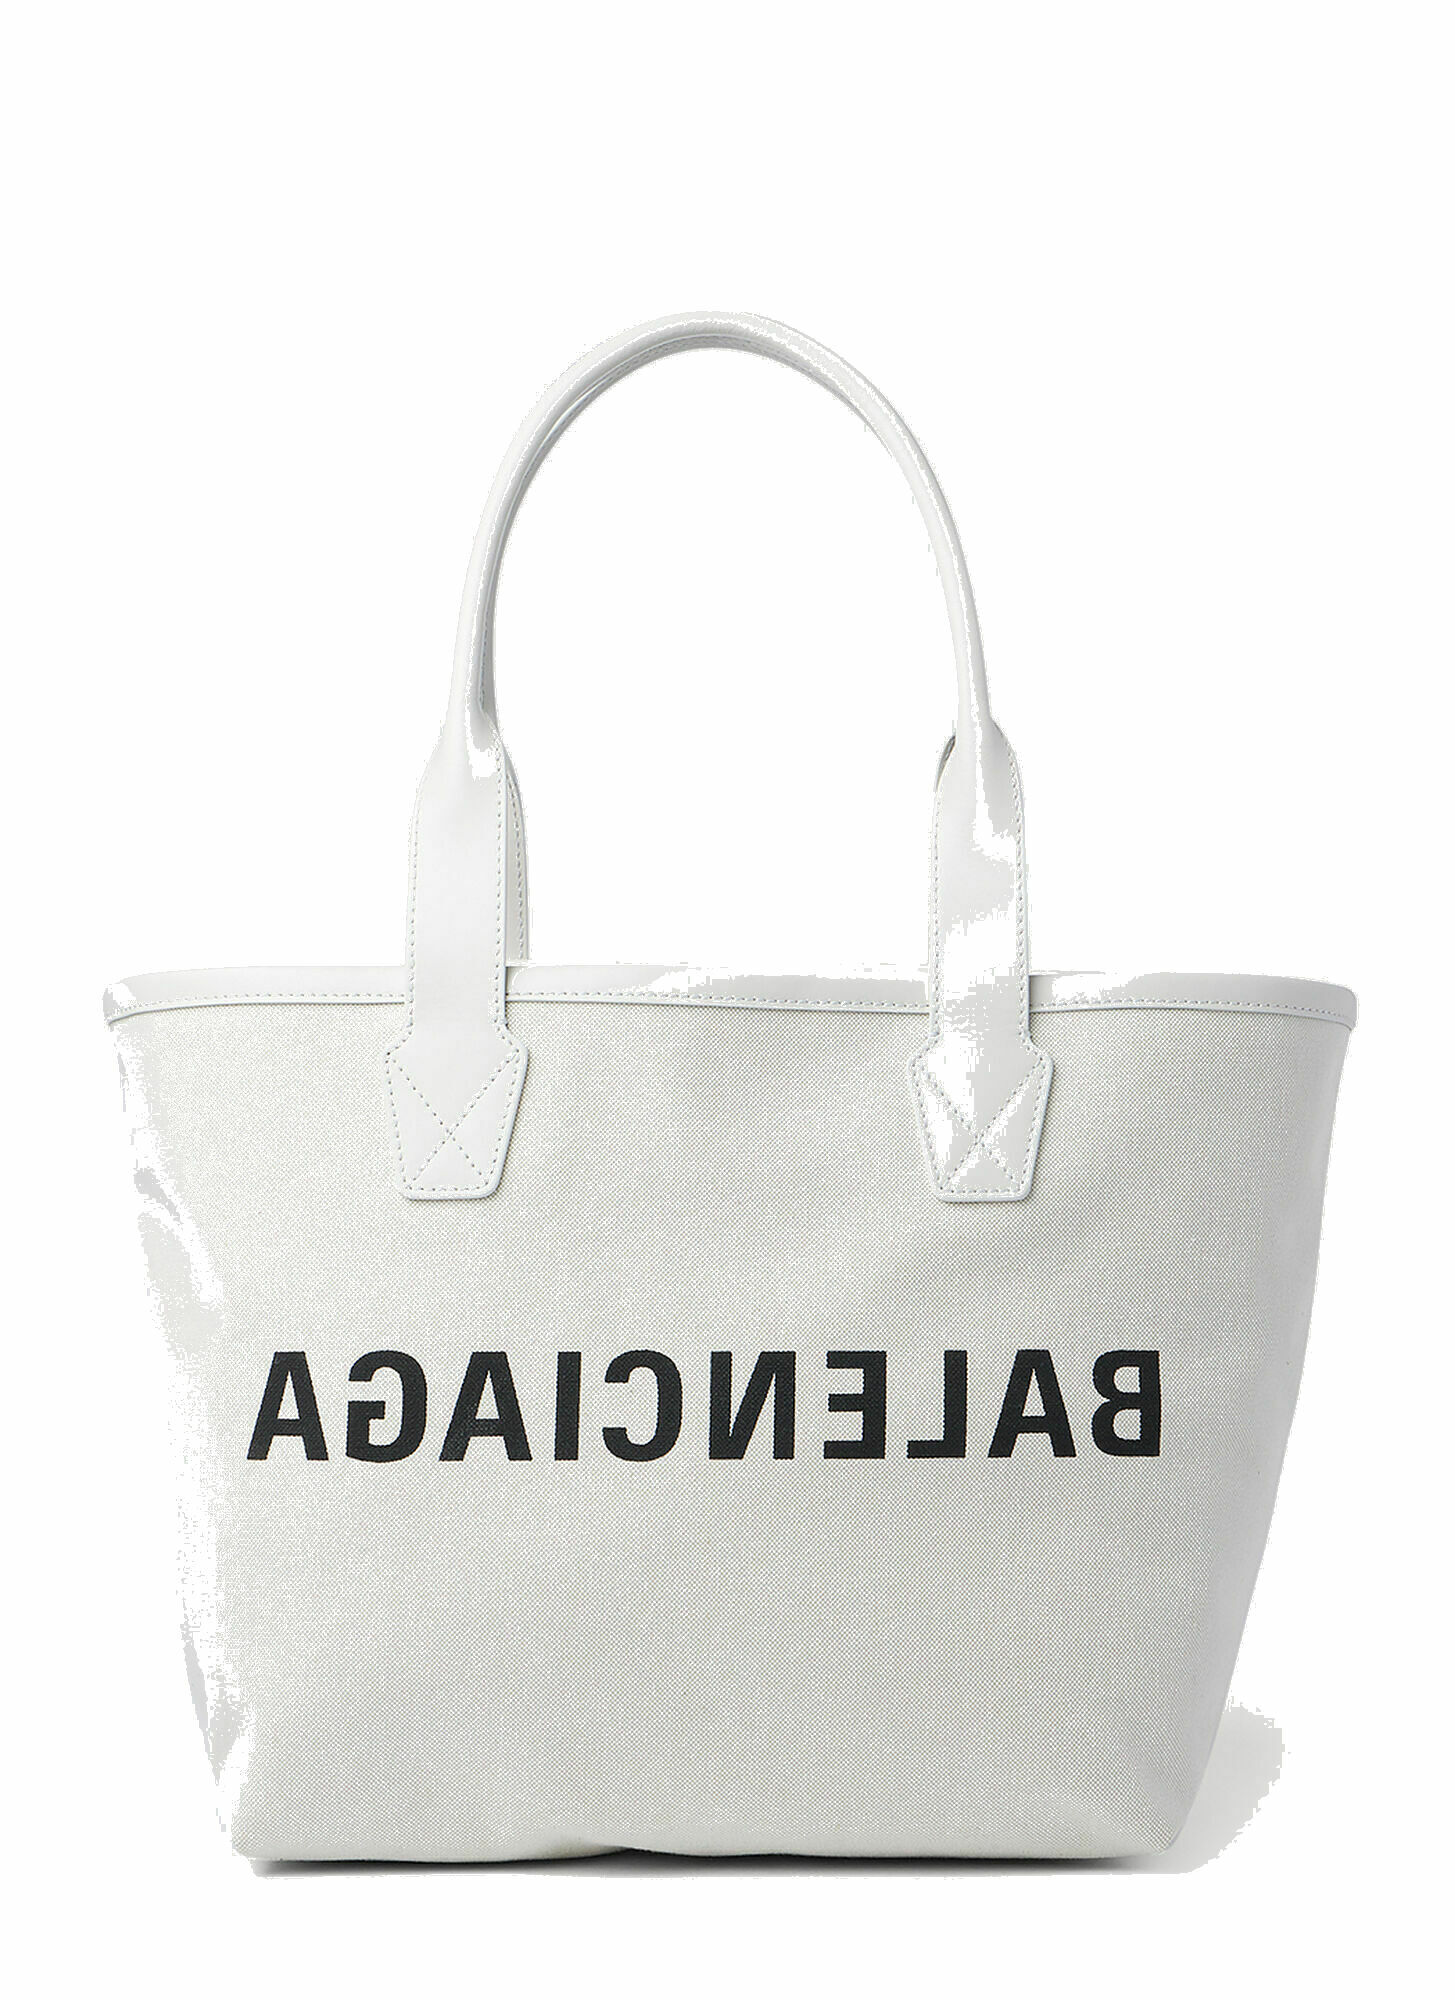 Balenciaga - Jumbo Small Tote Bag in White Balenciaga